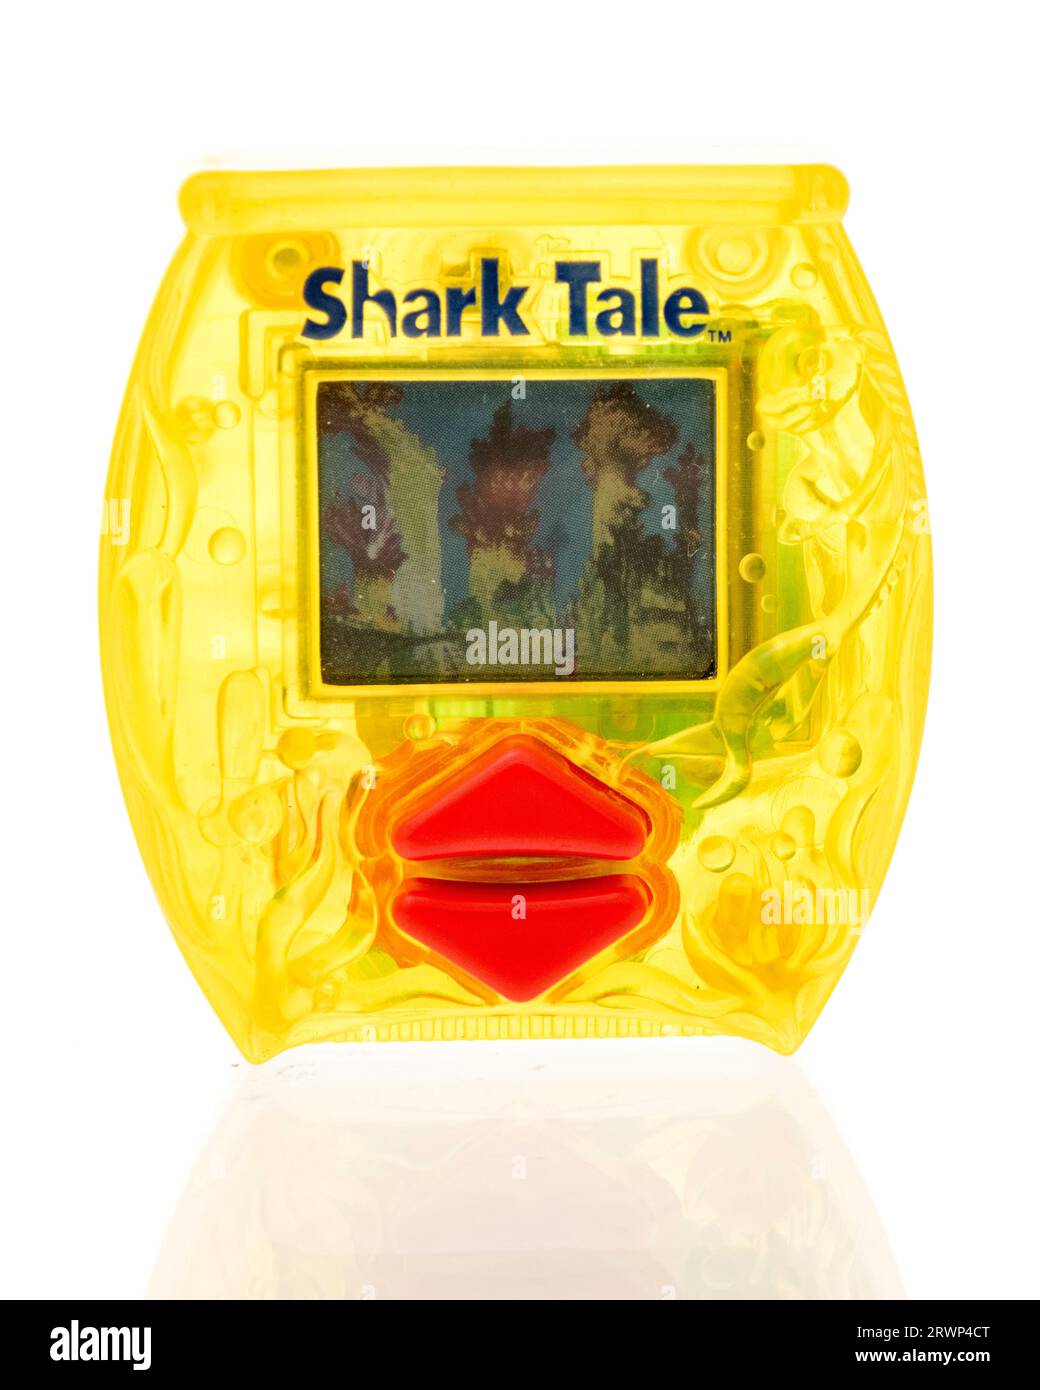 Winneconne, WI - 12 août 2023 : un paquet de Shark Tale classique jeu vidéo tenu à la main sur un fond isolé Banque D'Images